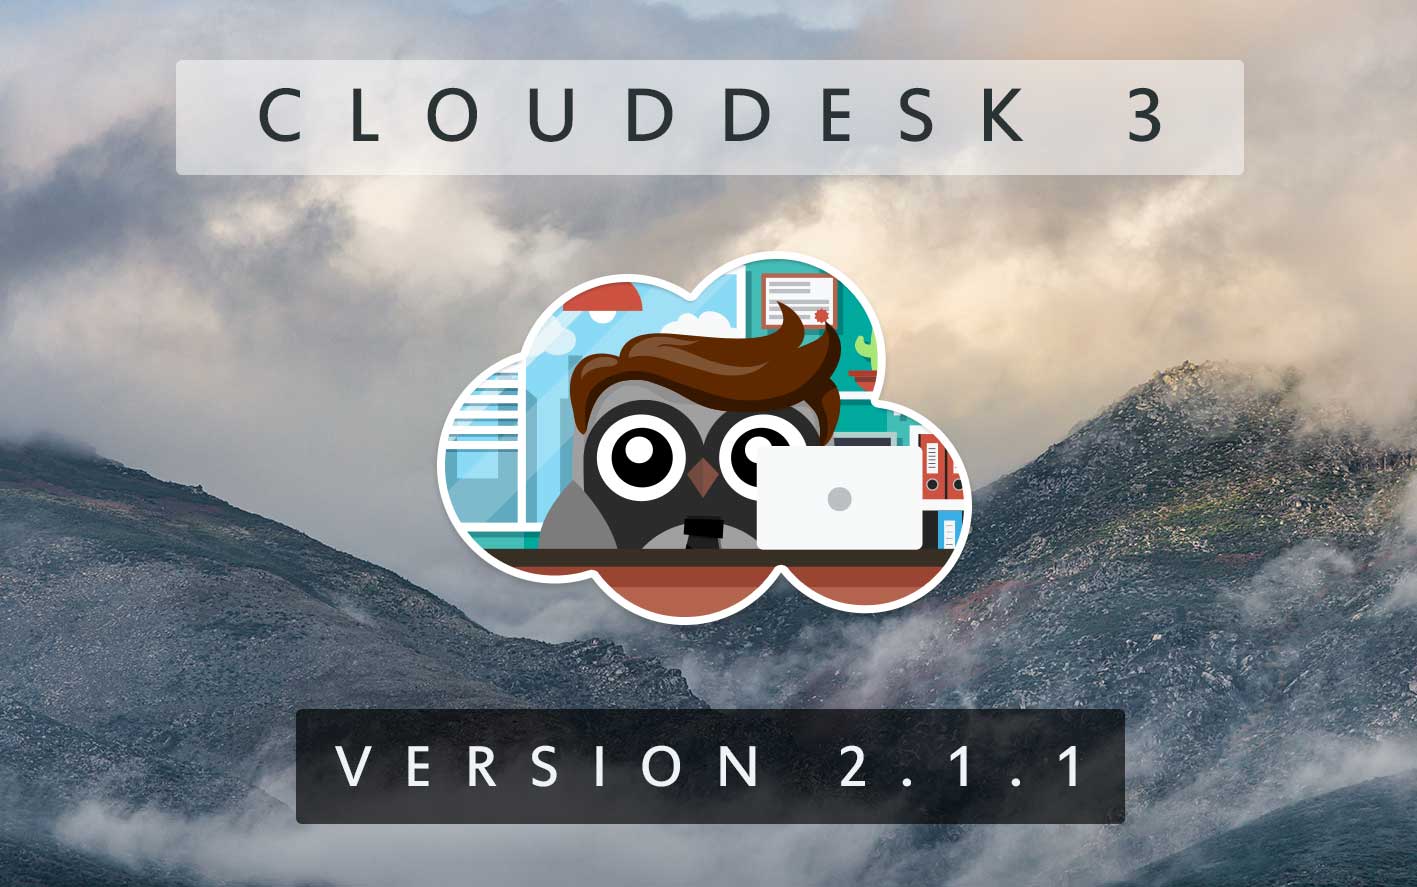 Cloud Desk 3 - Version 2.1.1